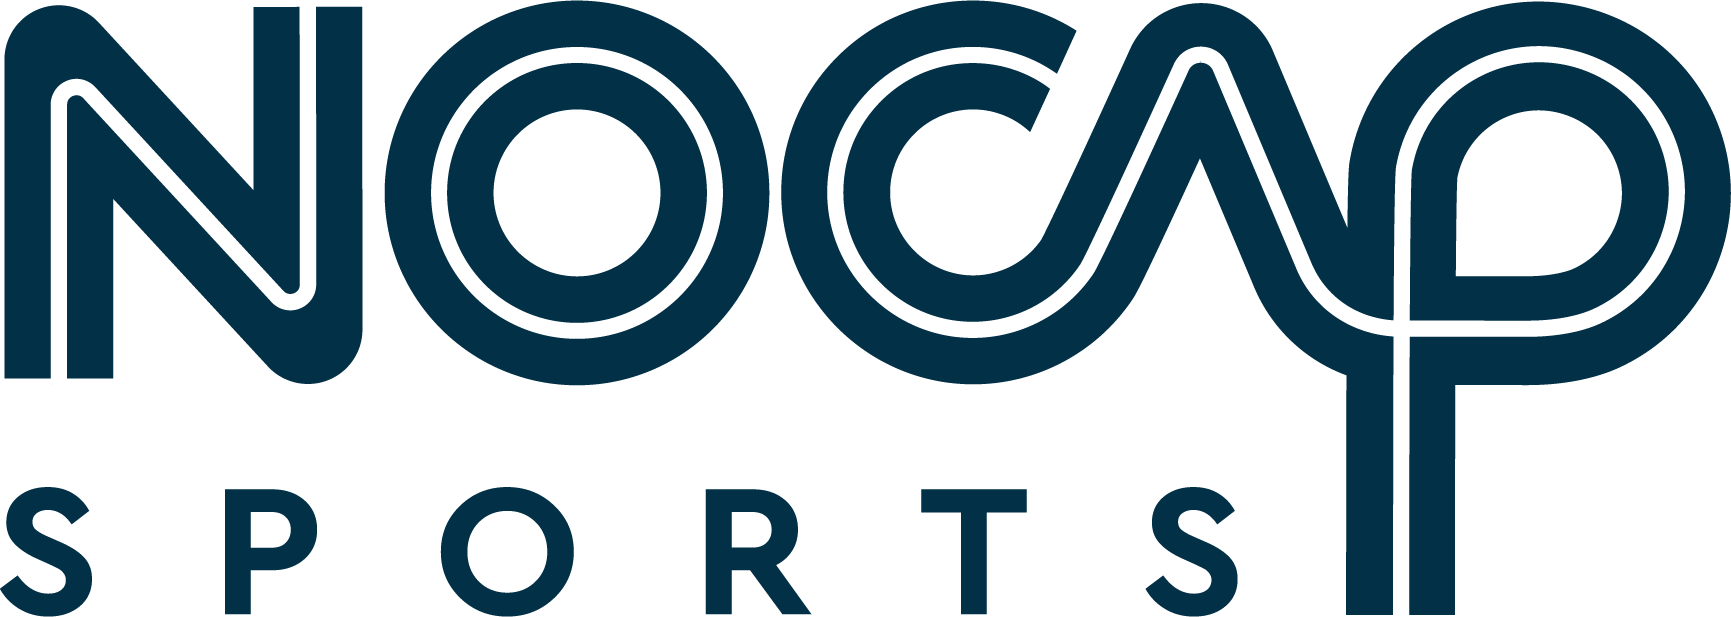 NOCAP Sports